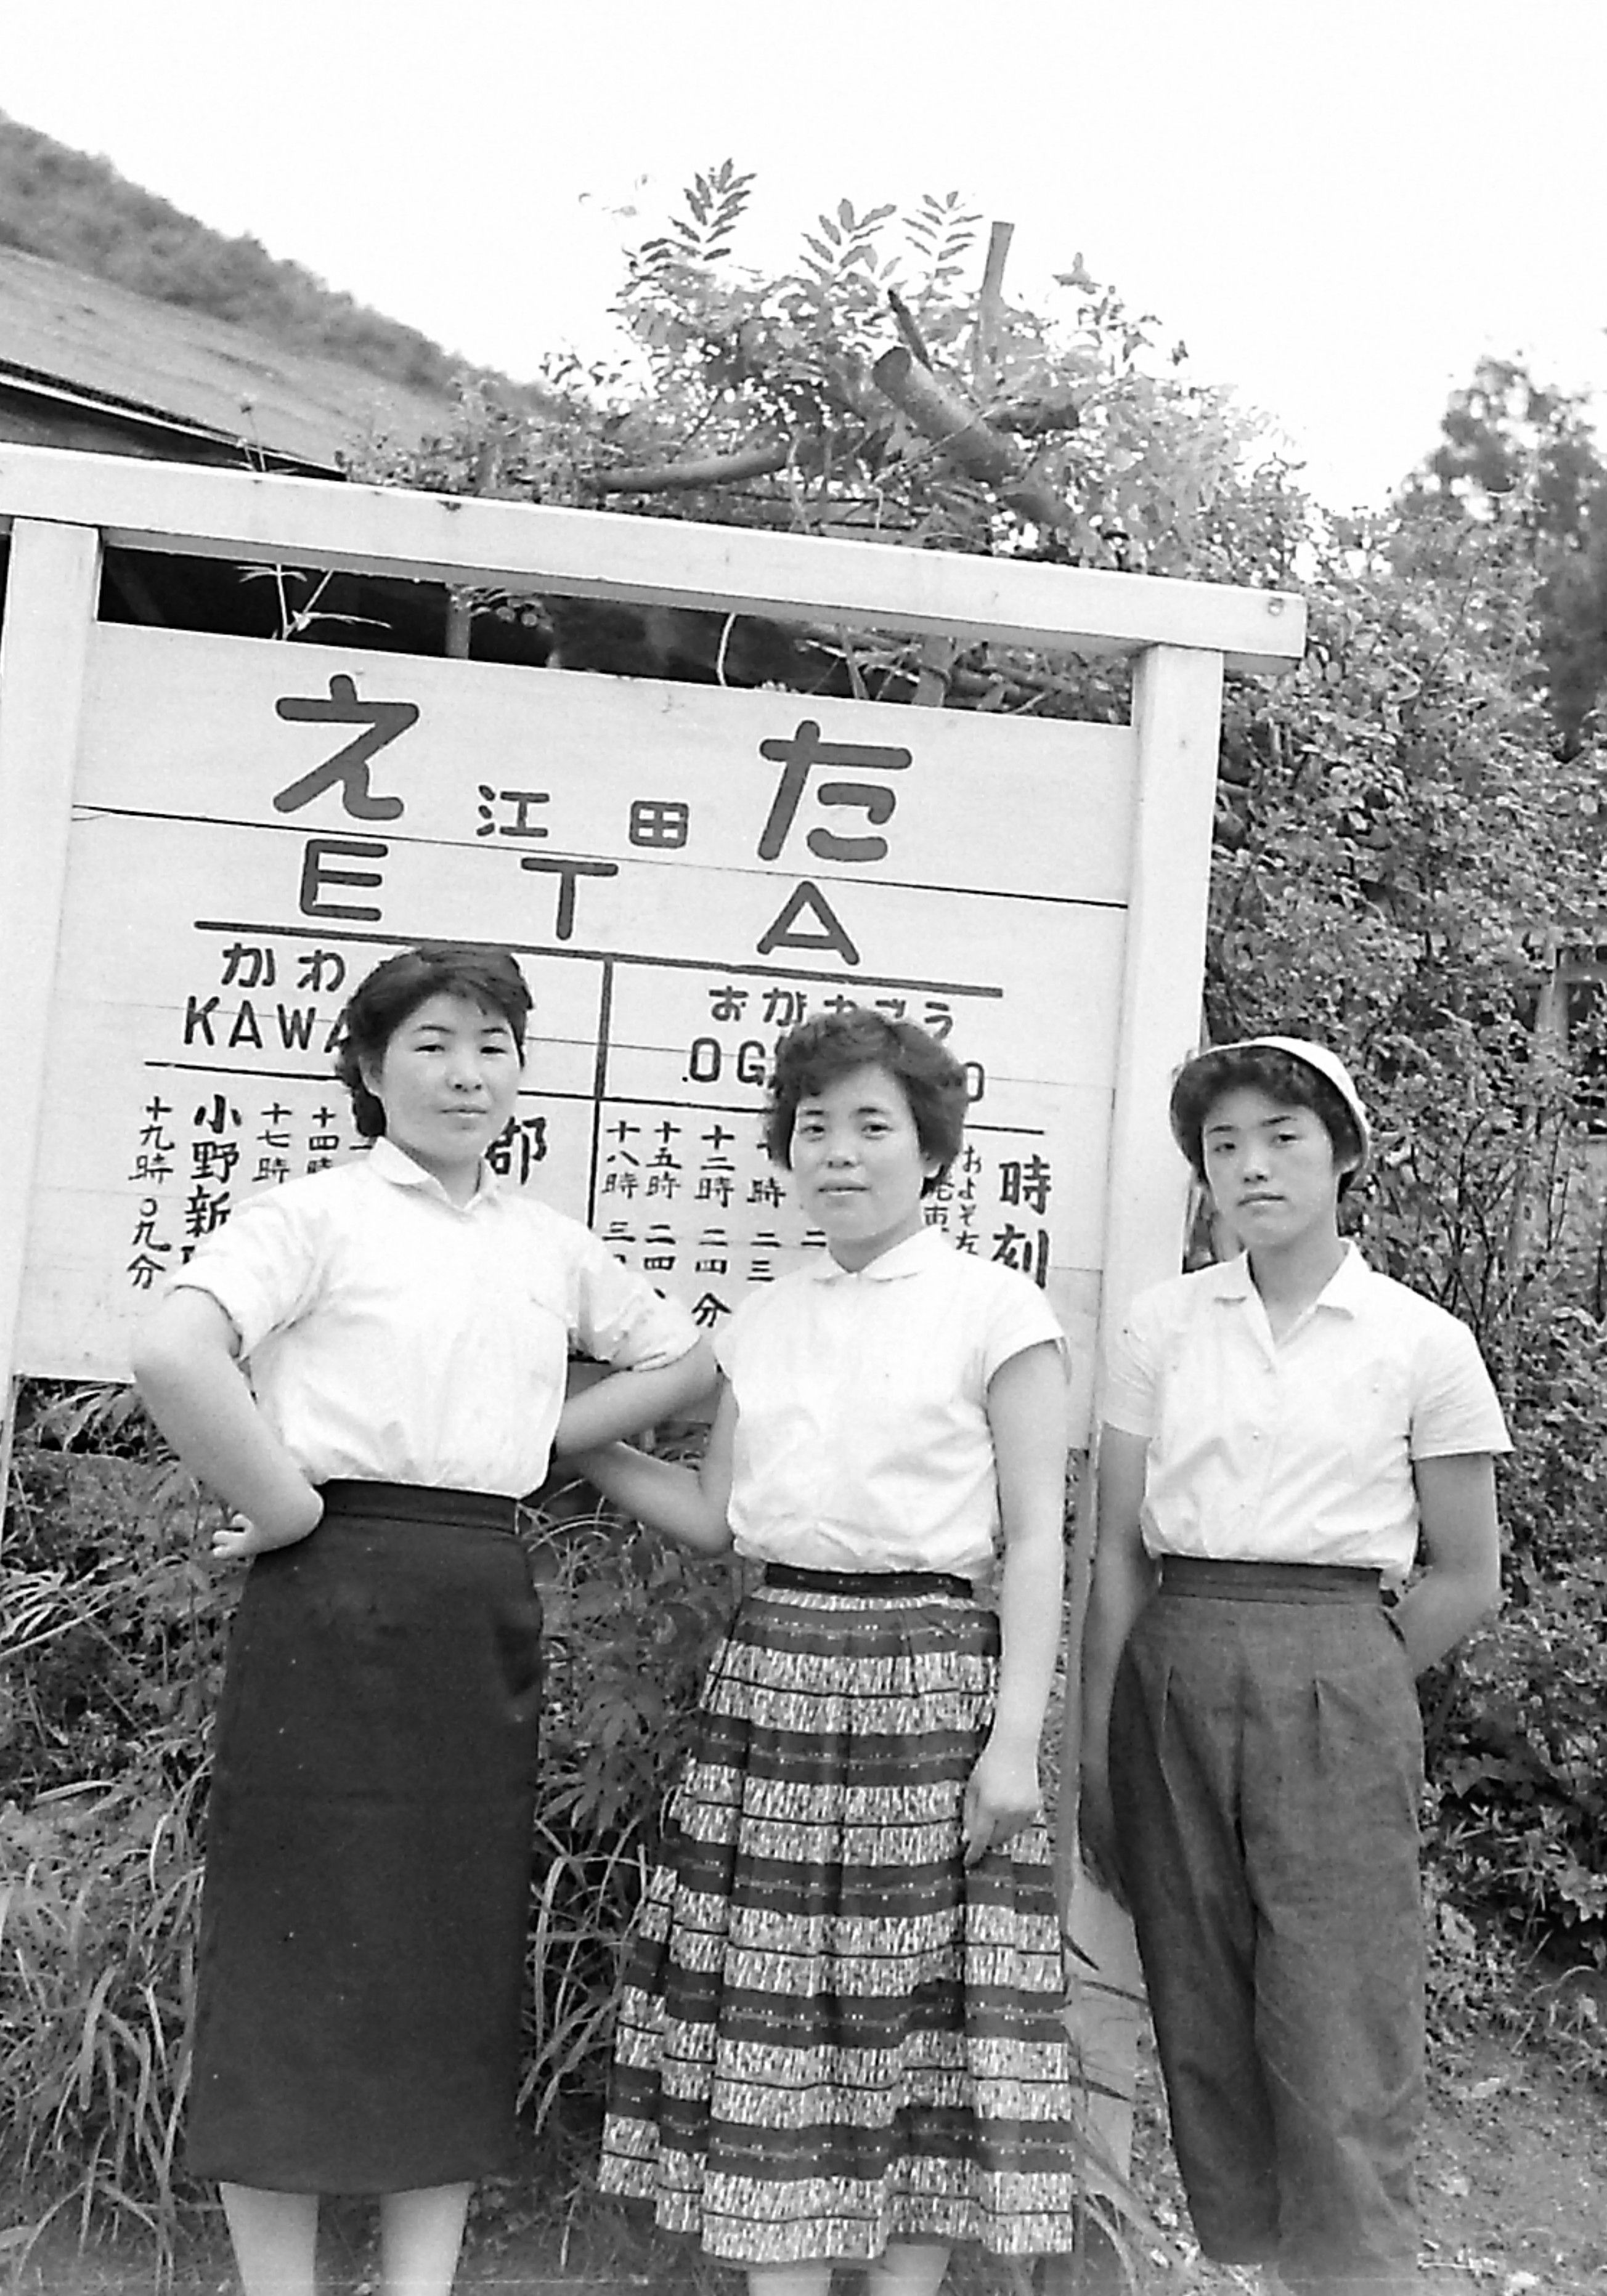 07 江田信号場の女性ハイカー(昭和30年代、国府田英二氏提供)